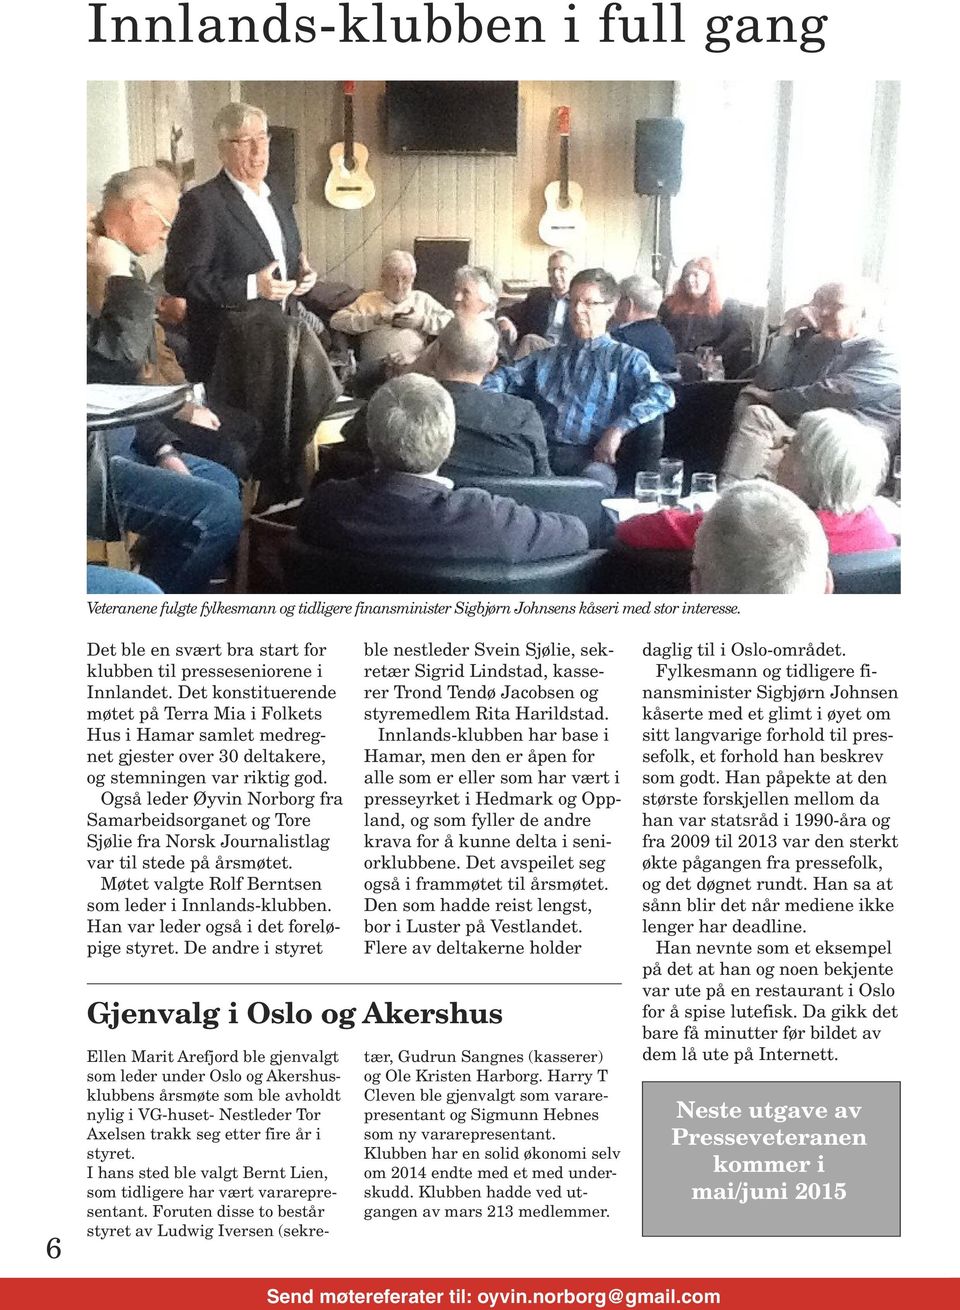 Det konstituerende møtet på Terra Mia i Folkets Hus i Hamar samlet medregnet gjester over 30 deltakere, og stemningen var riktig god.